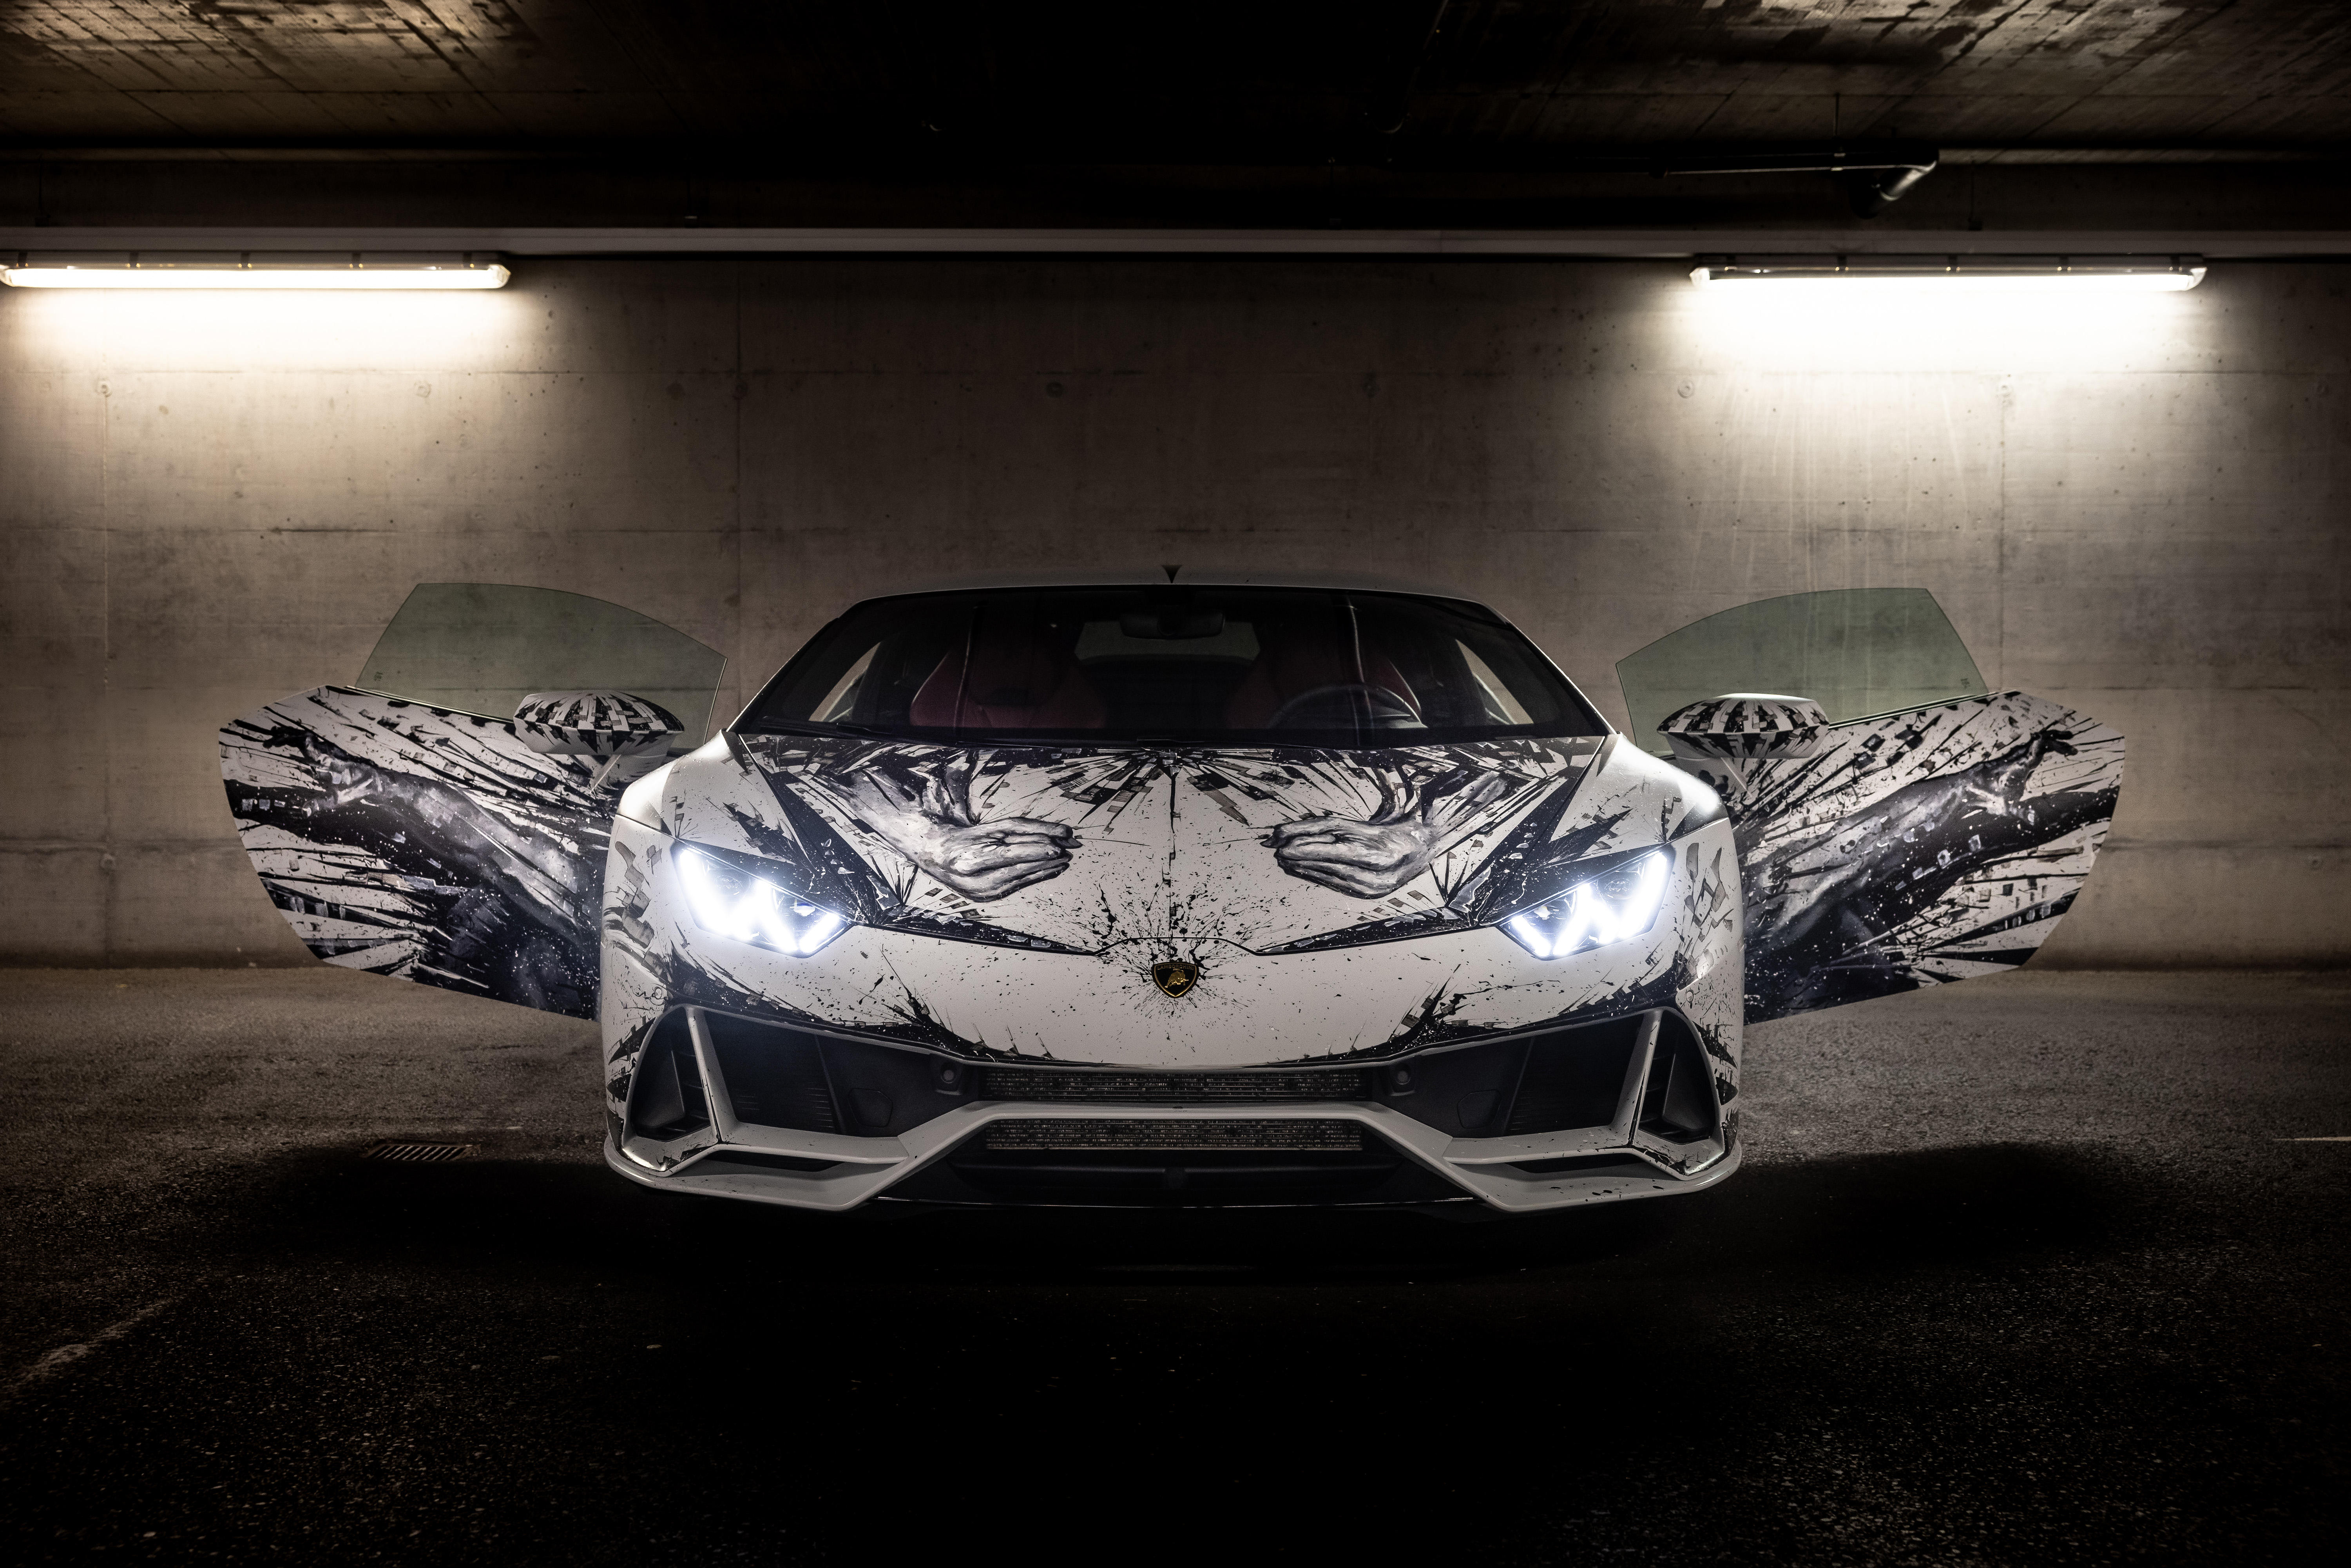 Free download wallpaper Lamborghini, Supercar, Vehicles, Lamborghini Huracán Evo on your PC desktop